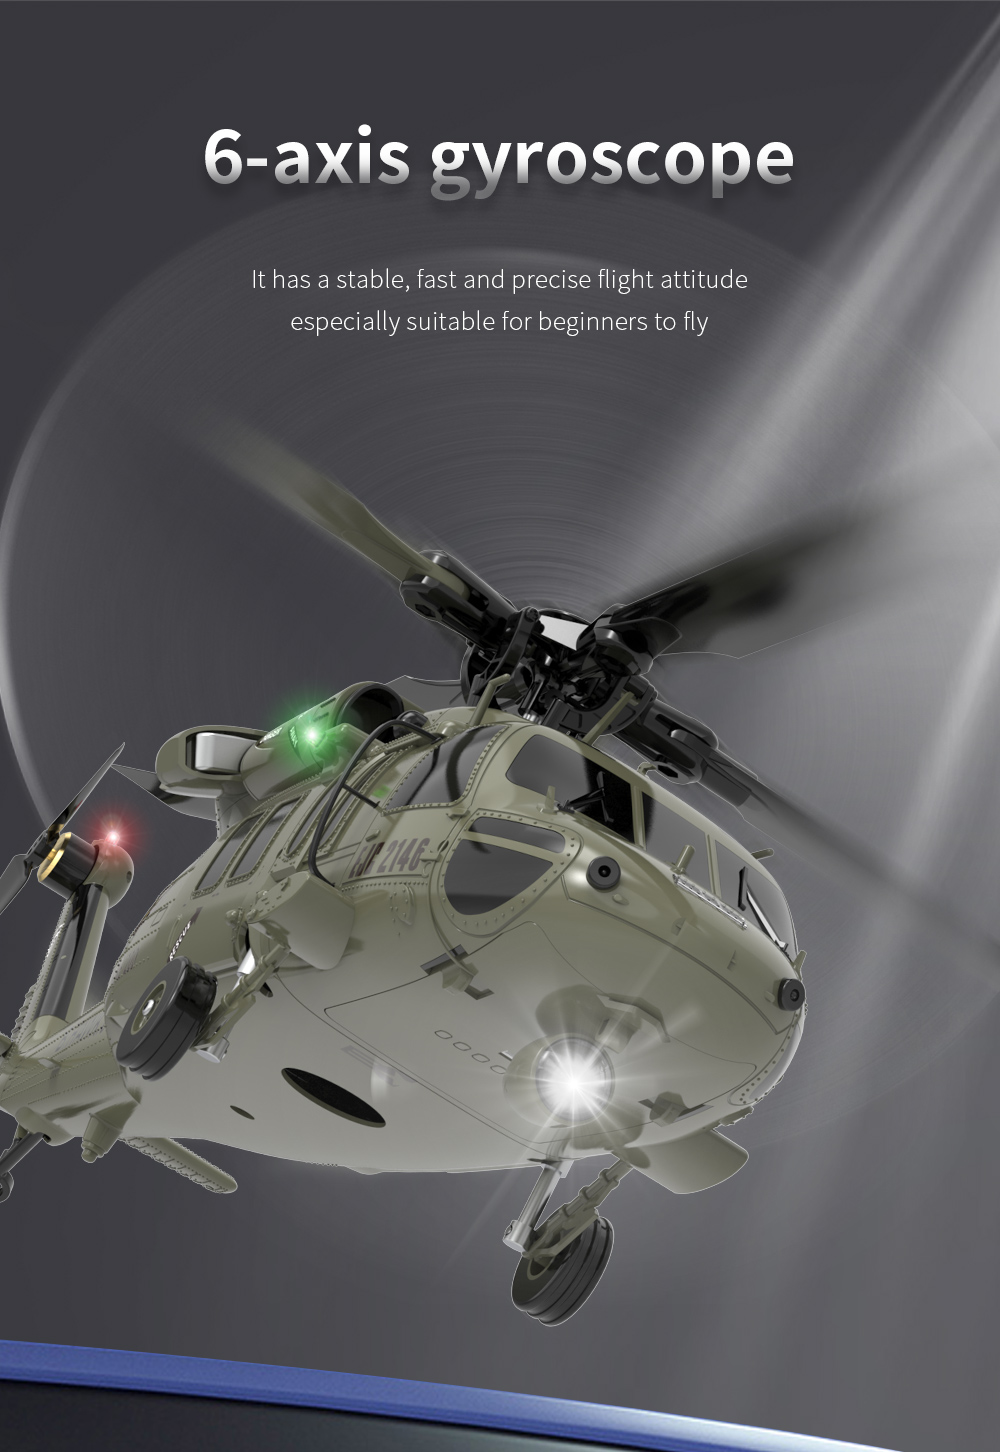 UH-60 Black Hawk RC Military Helicopter (TH-57 Sea Ranger, MH-65 DolphinMH-65 Dolphin, MH-60 JayhawkMH-60 Jayhawk)